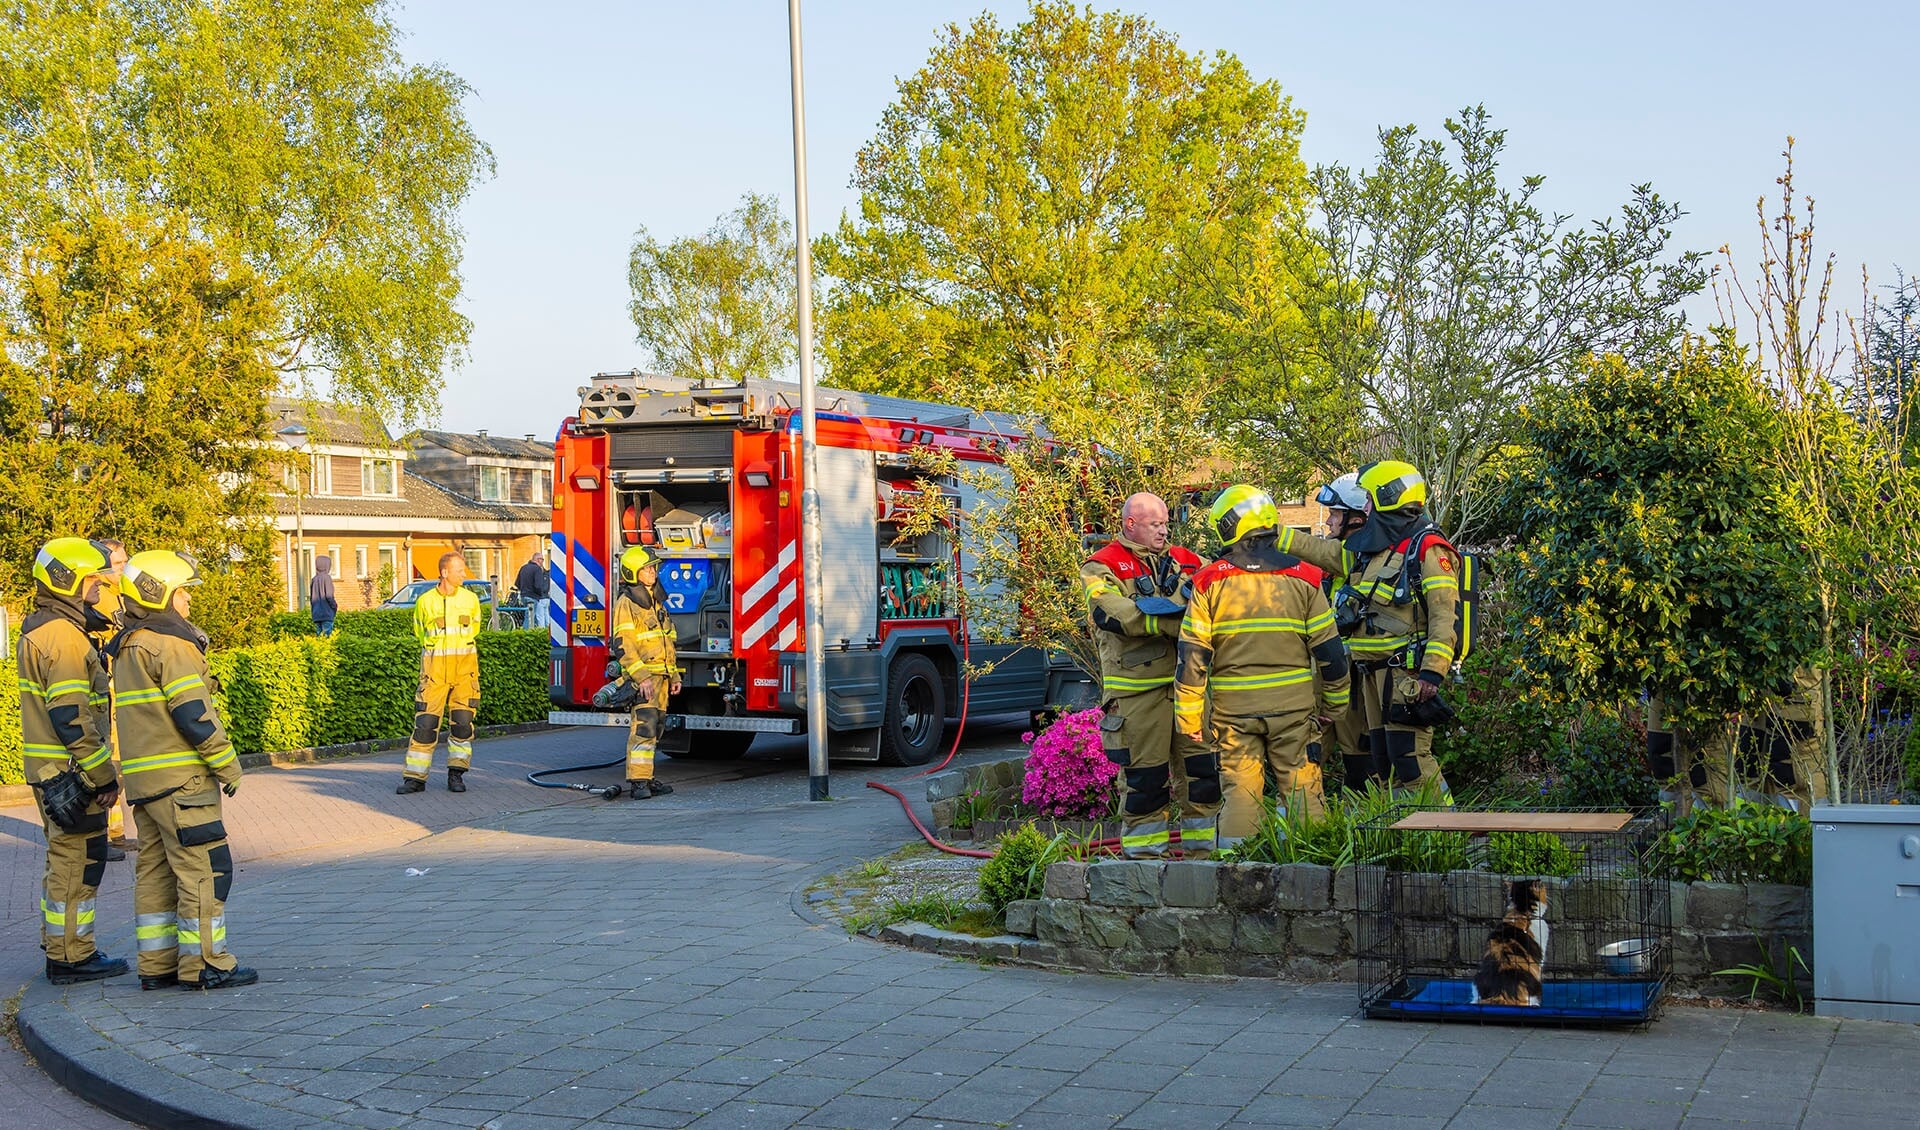 Brandweer naar brandje in woning Iepenstraat. (Foto: Charles Mallo, Foto Mallo)